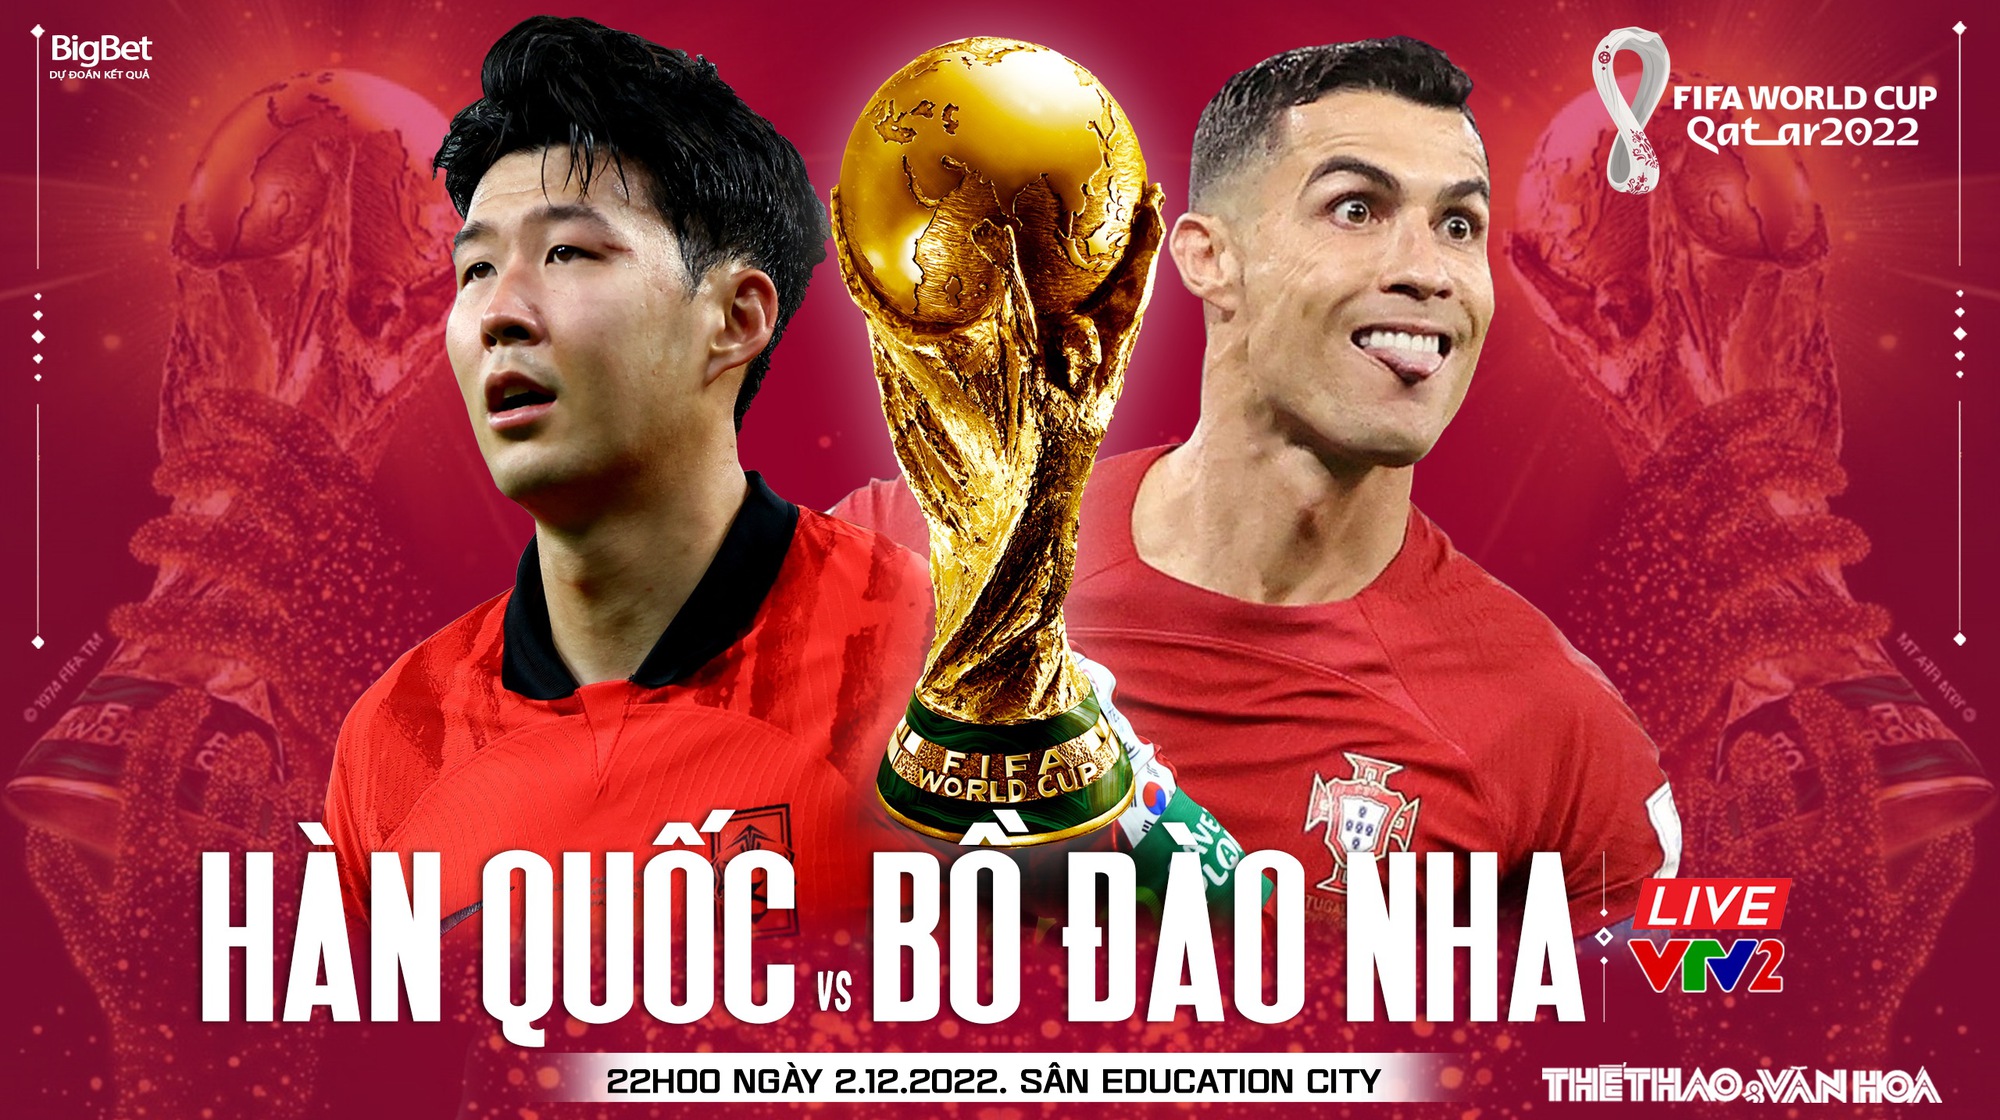 Trận đấu Hàn Quốc vs Bồ Đào Nha World Cup 2024: Trận đấu đáng chờ đợi giữa Hàn Quốc và Bồ Đào Nha sẽ diễn ra vào ngày 2/12 năm 2024 tại World Cup. Các nhà vô địch châu Âu sẽ đối đầu với nhà vô địch châu Á để tranh tài tại giải đấu điện tử lớn nhất thế giới. Hãy cùng xem trận đấu đầy kịch tính này và chờ đợi để biết ai sẽ giành chiến thắng trong cuộc đối đầu này.